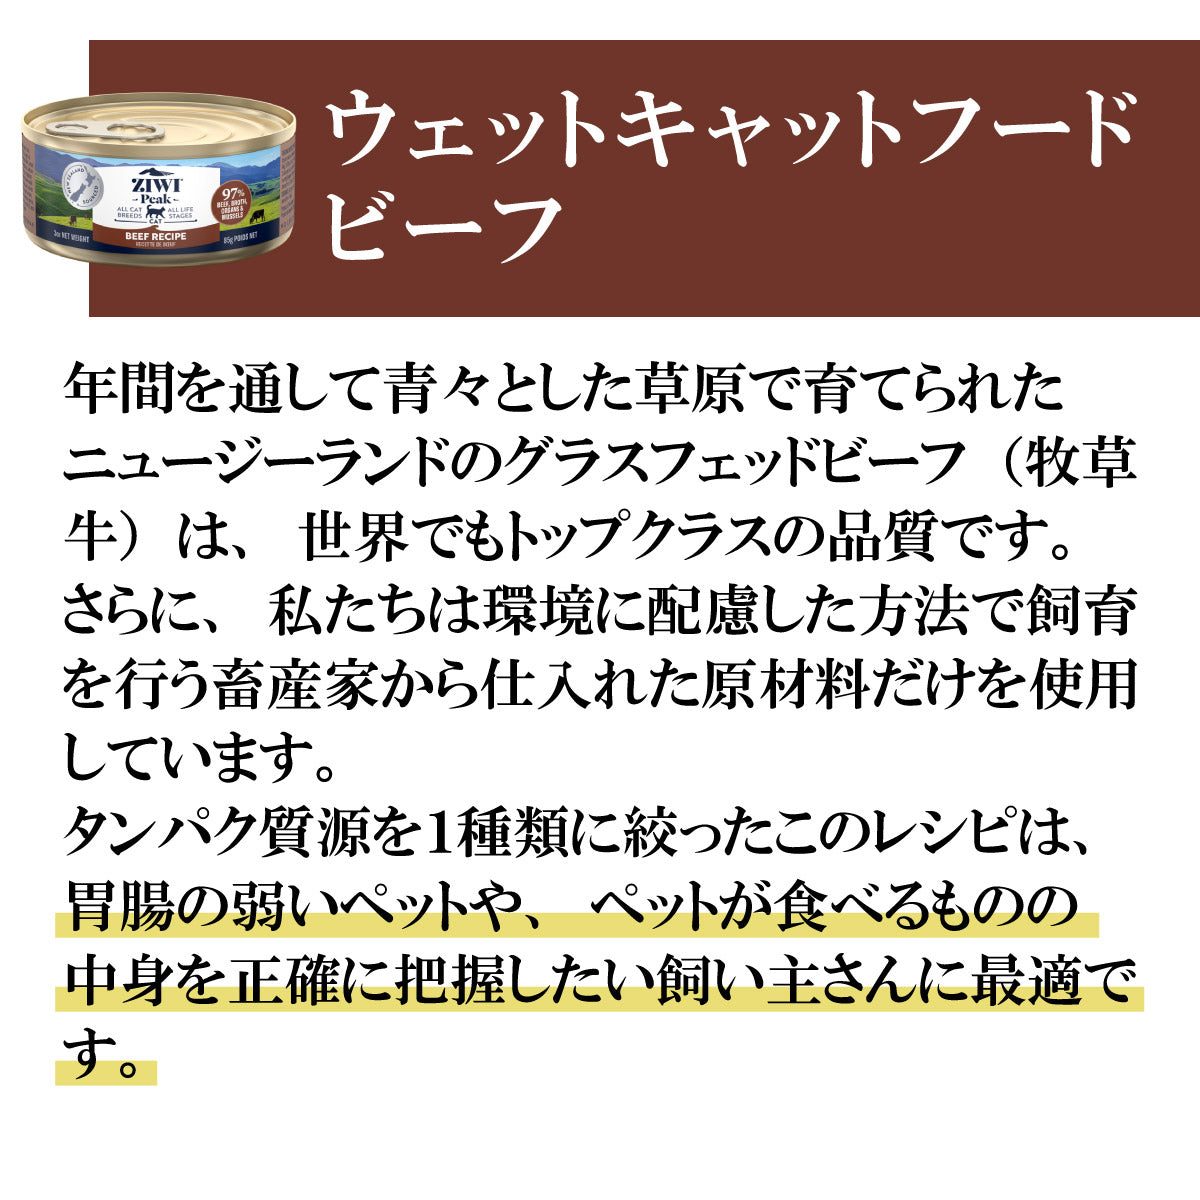 ジウィ ZIWI キャットフード キャット缶 グラスフェッドビーフ 85g×24缶【送料無料】 正規品 無添加 ジウィピーク